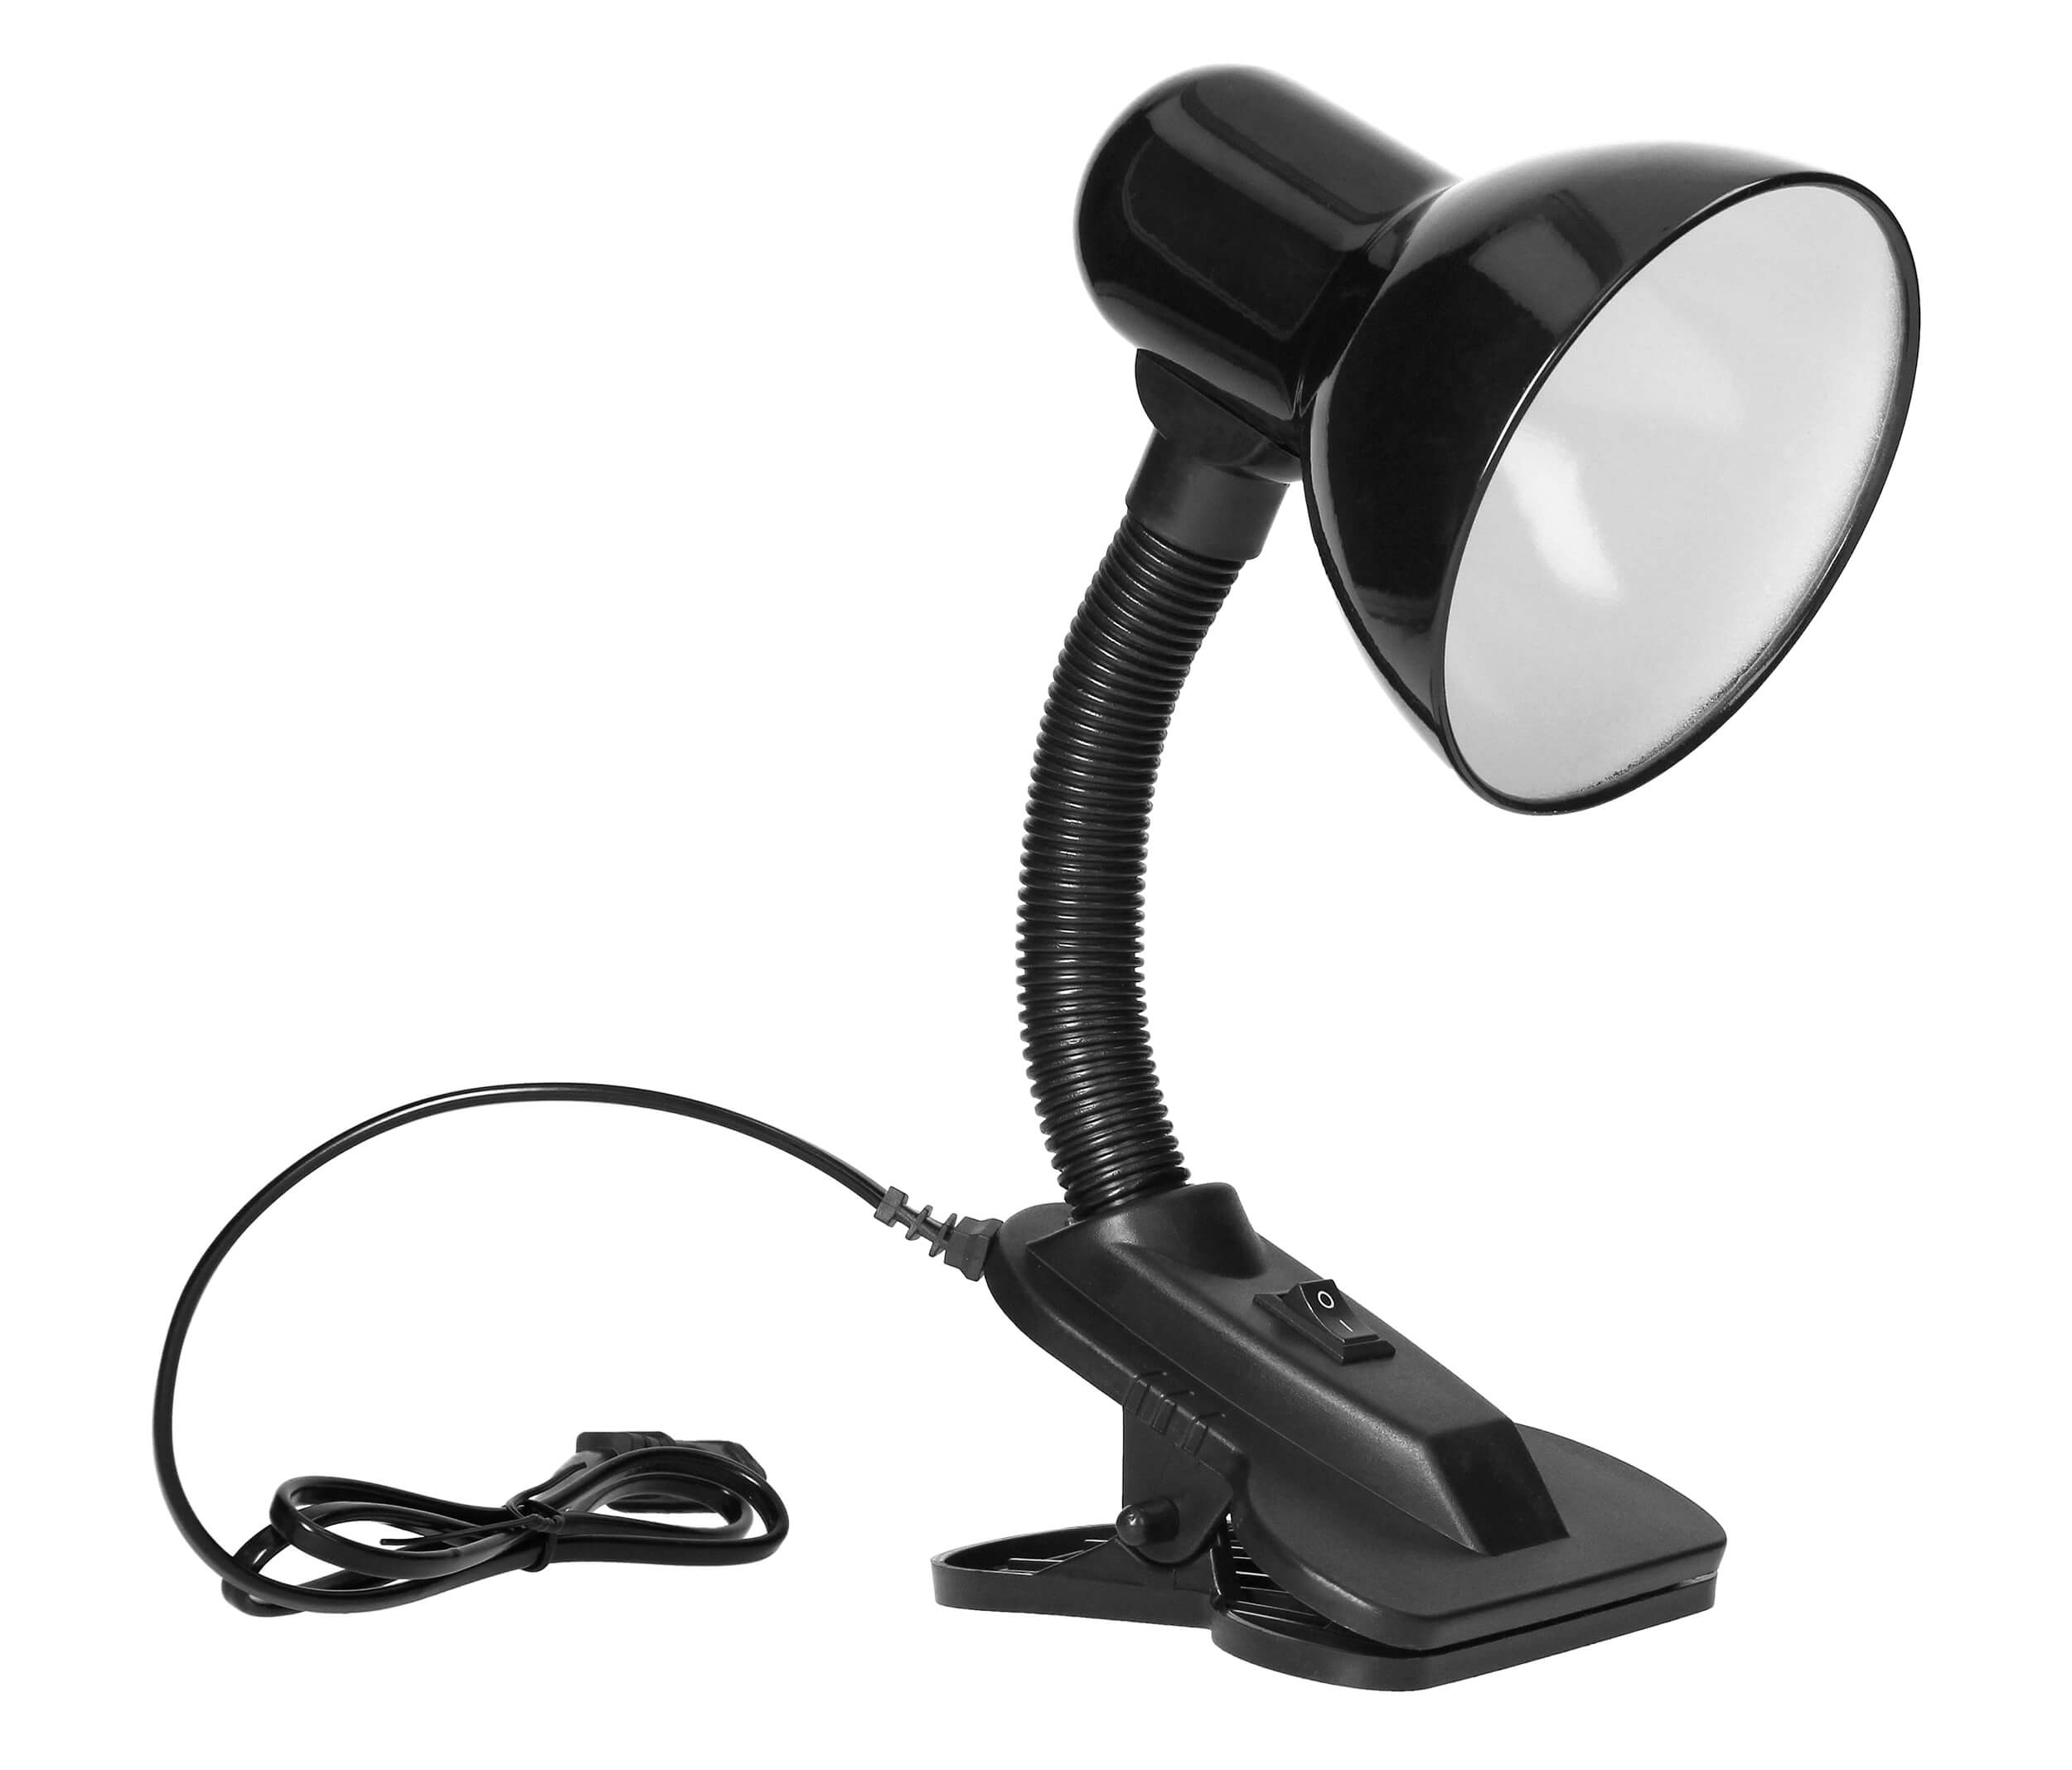 Lampa de birou VIRONE LATSA DL-3/B, E27, 40 W, IP20, brat flexibil cu clema, cablu 1 m, otel + plastic, negru